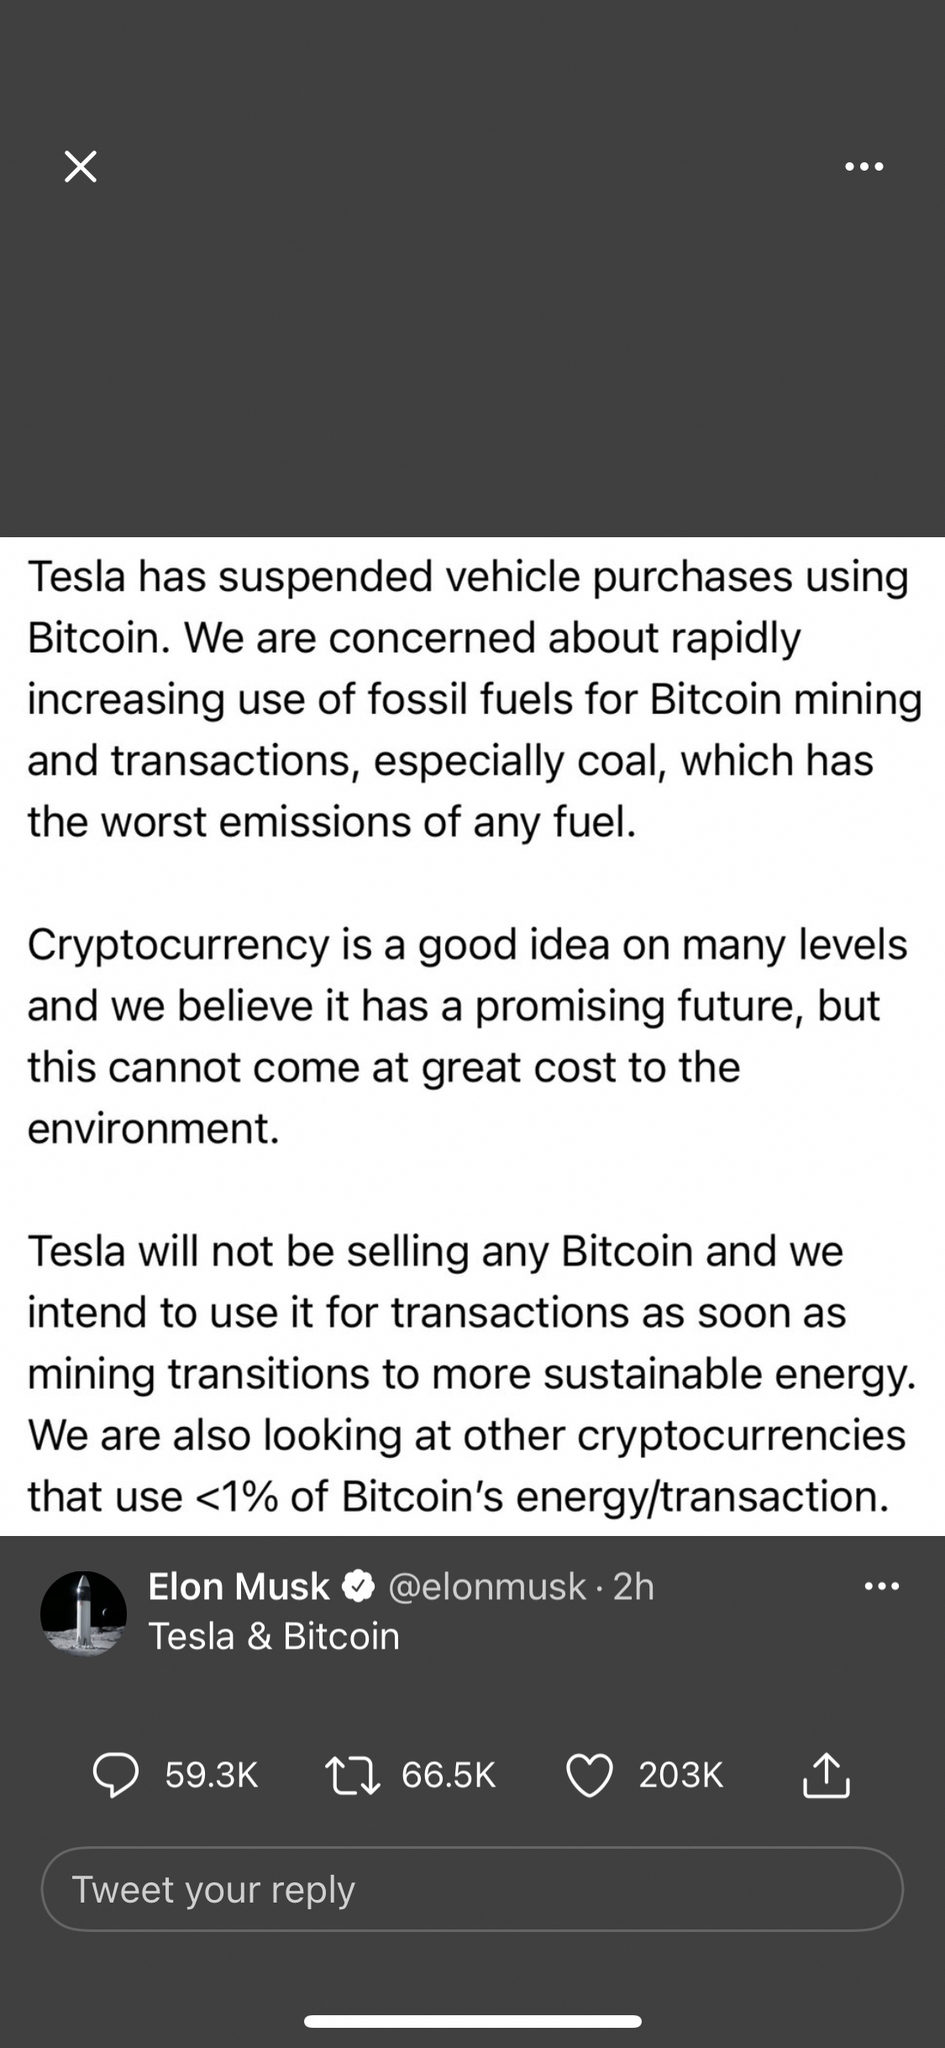 Anh Lon lật mặt nhanh hơn nyc của bạn. Tesla ngưng ko cho mua xe bằng bitcoin vì muốn bảo vệ môi...